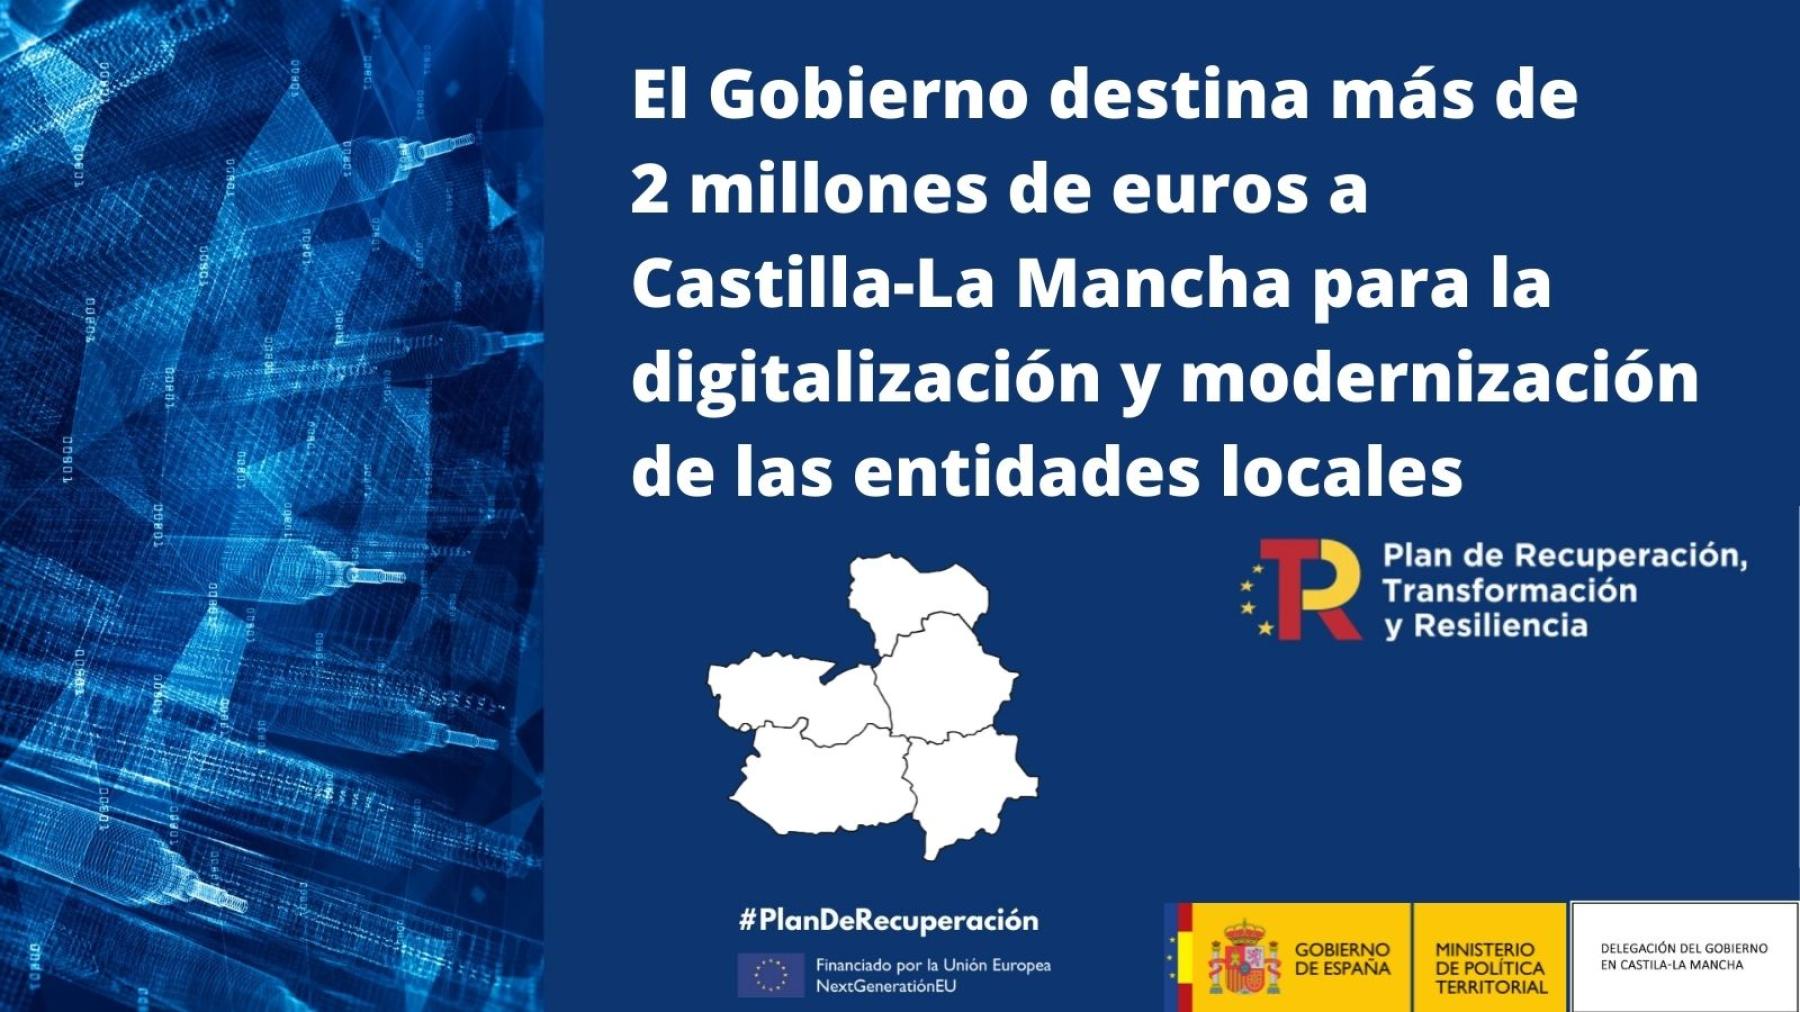 El Gobierno destina más de 2 millones de euros a Castilla-La Mancha para la digitalización y modernización de las entidades locales